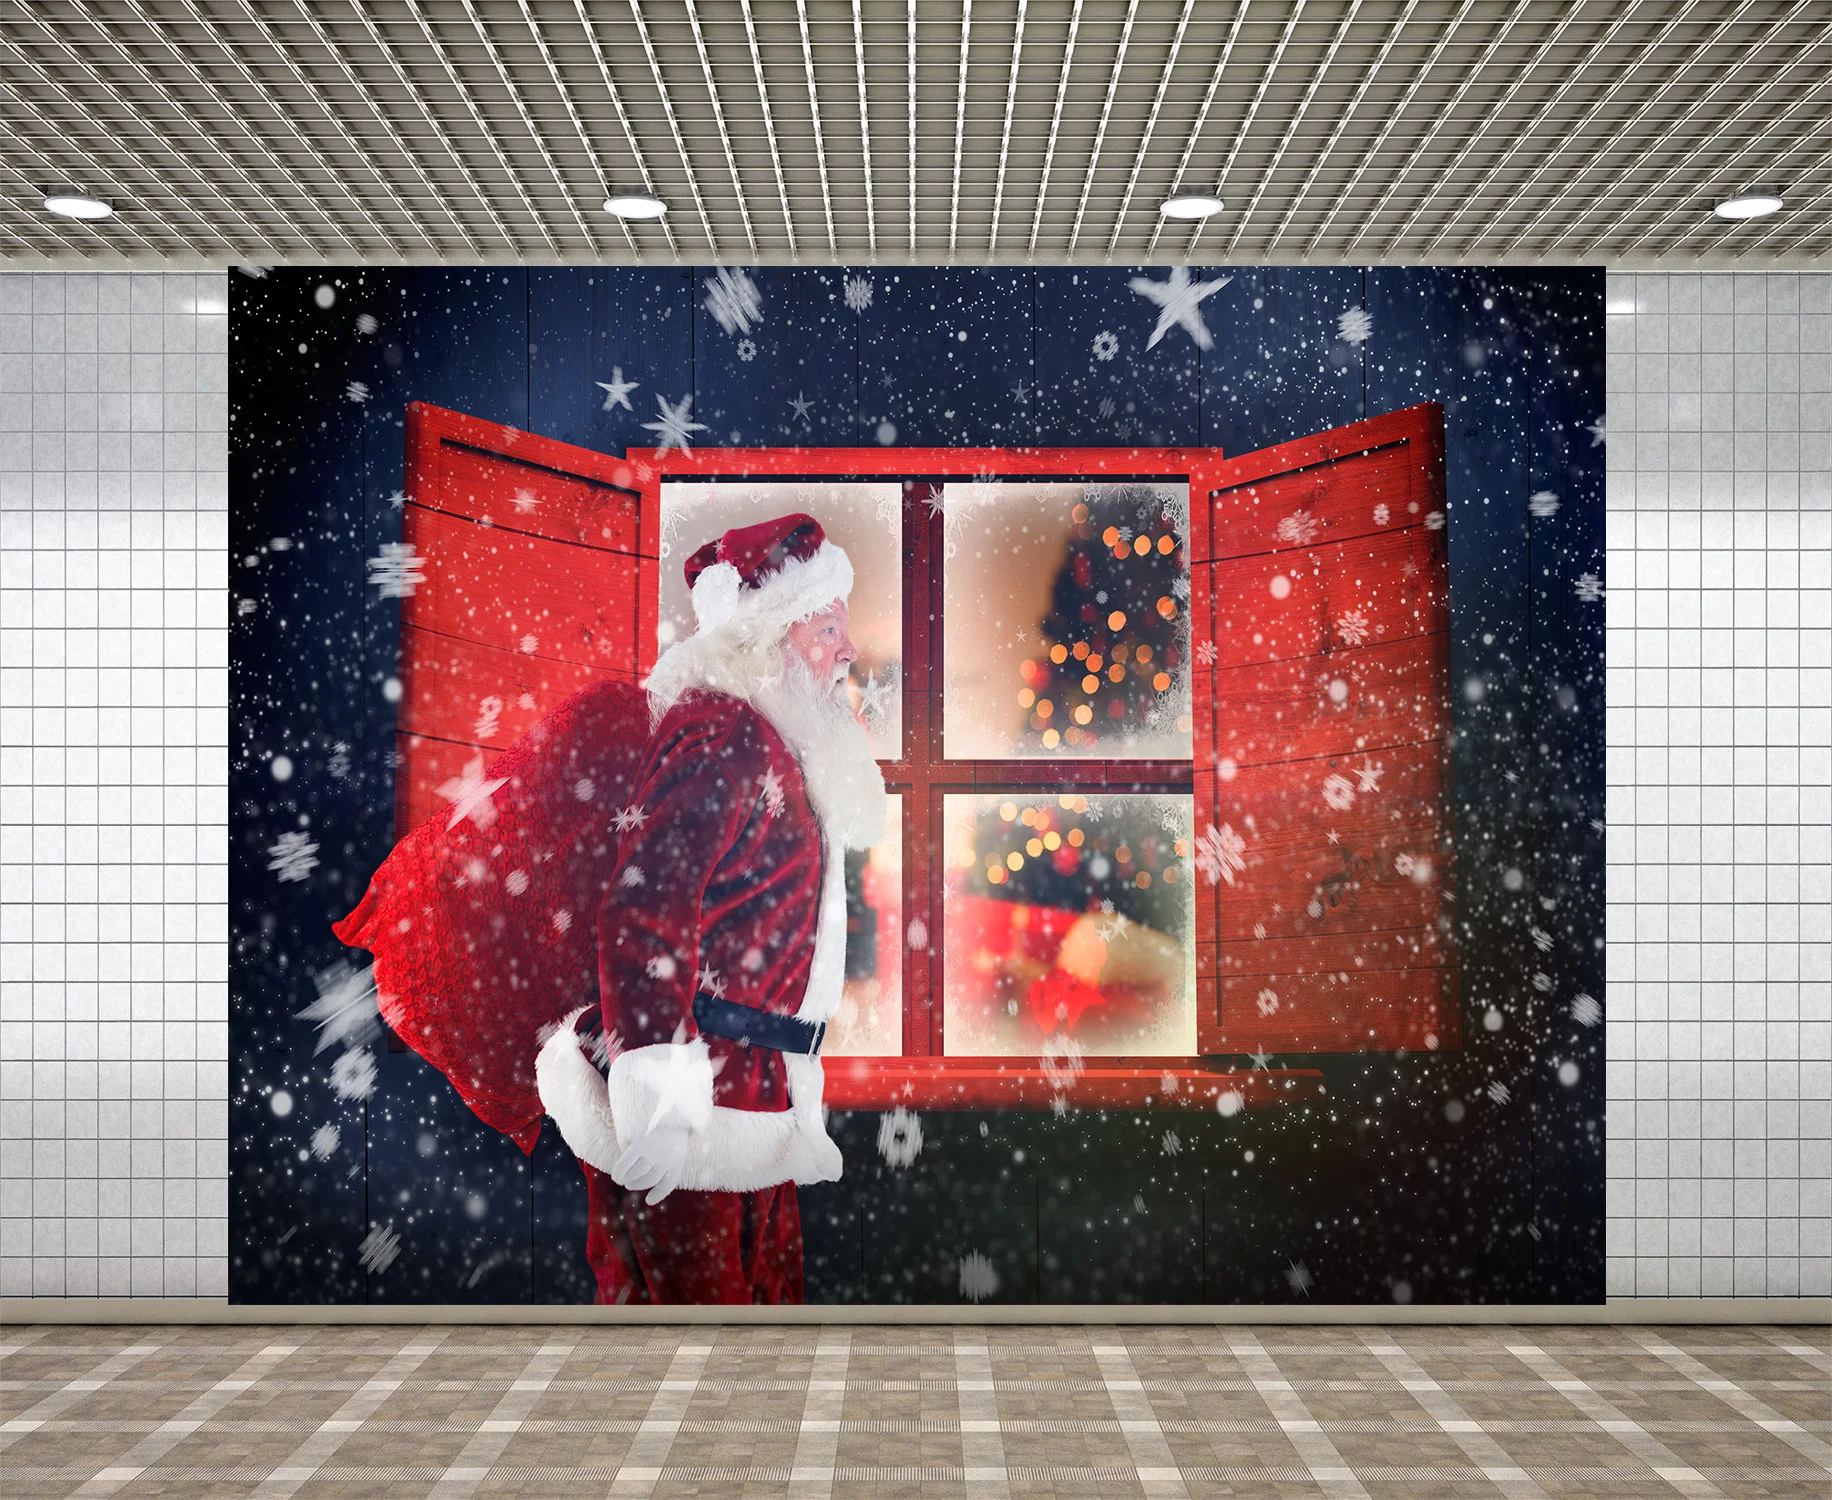 

Lyavshi Зимний Рождественский снег Санта Клаус окна фон для фотосъемки с изображением в стиле вечеринки в честь Дня Рождения Фотофон для студи...